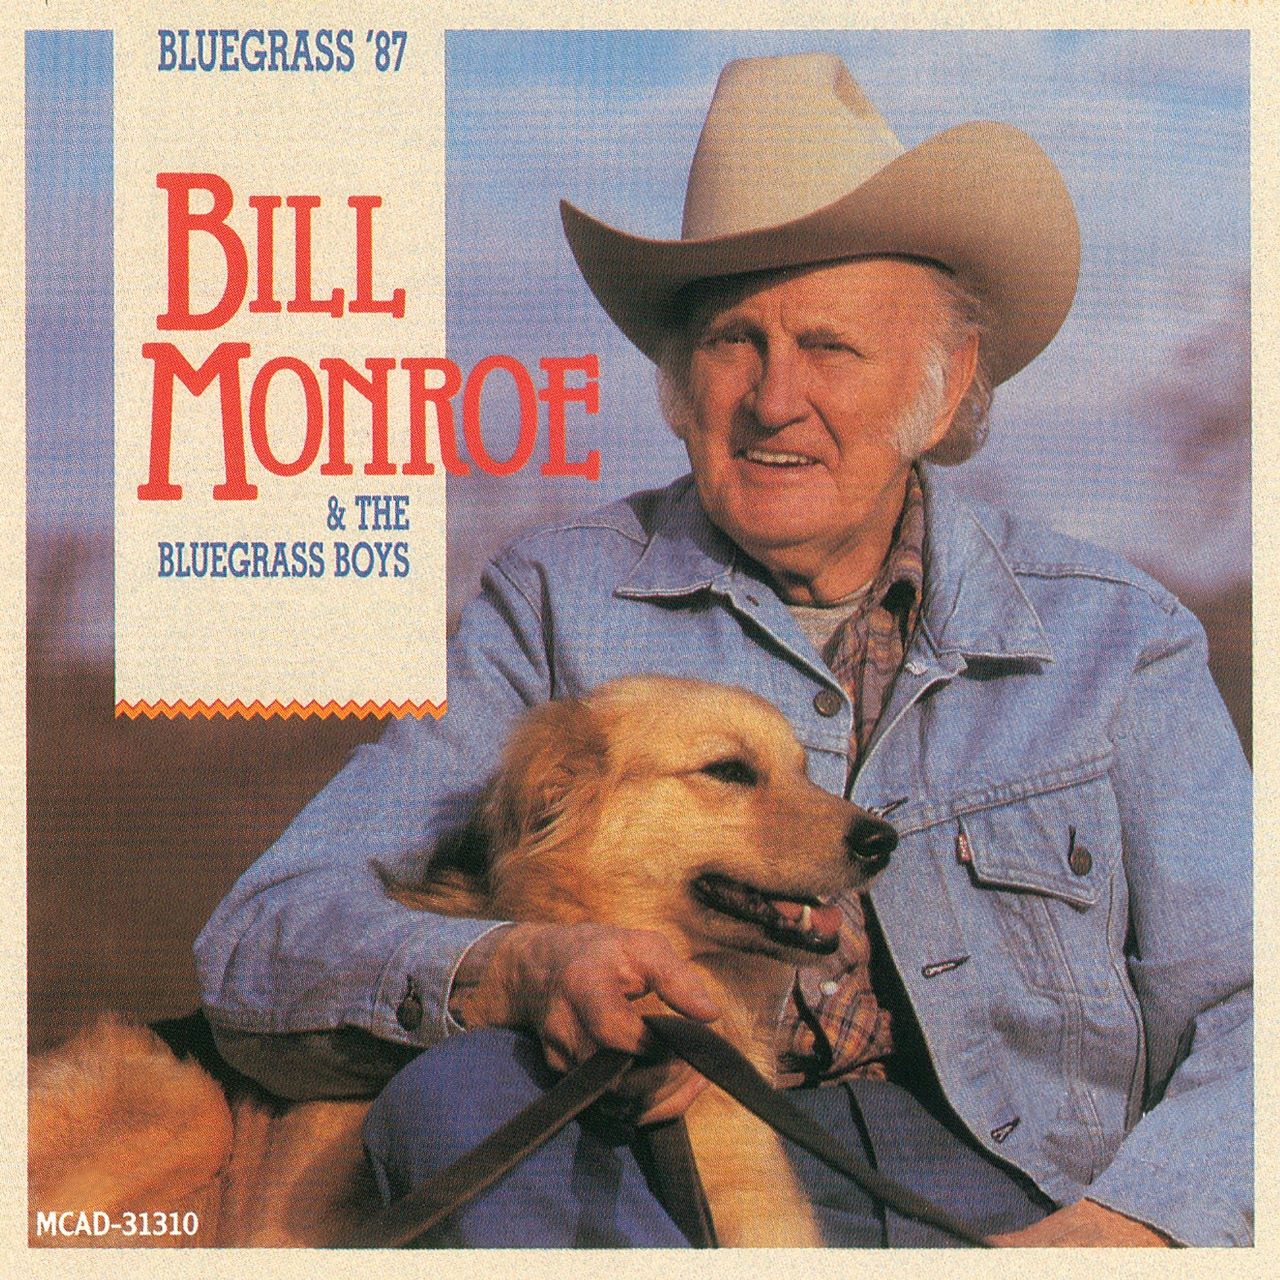 Bill Monroe & The Bluegrass Boys - Bluegrass '87 cover album